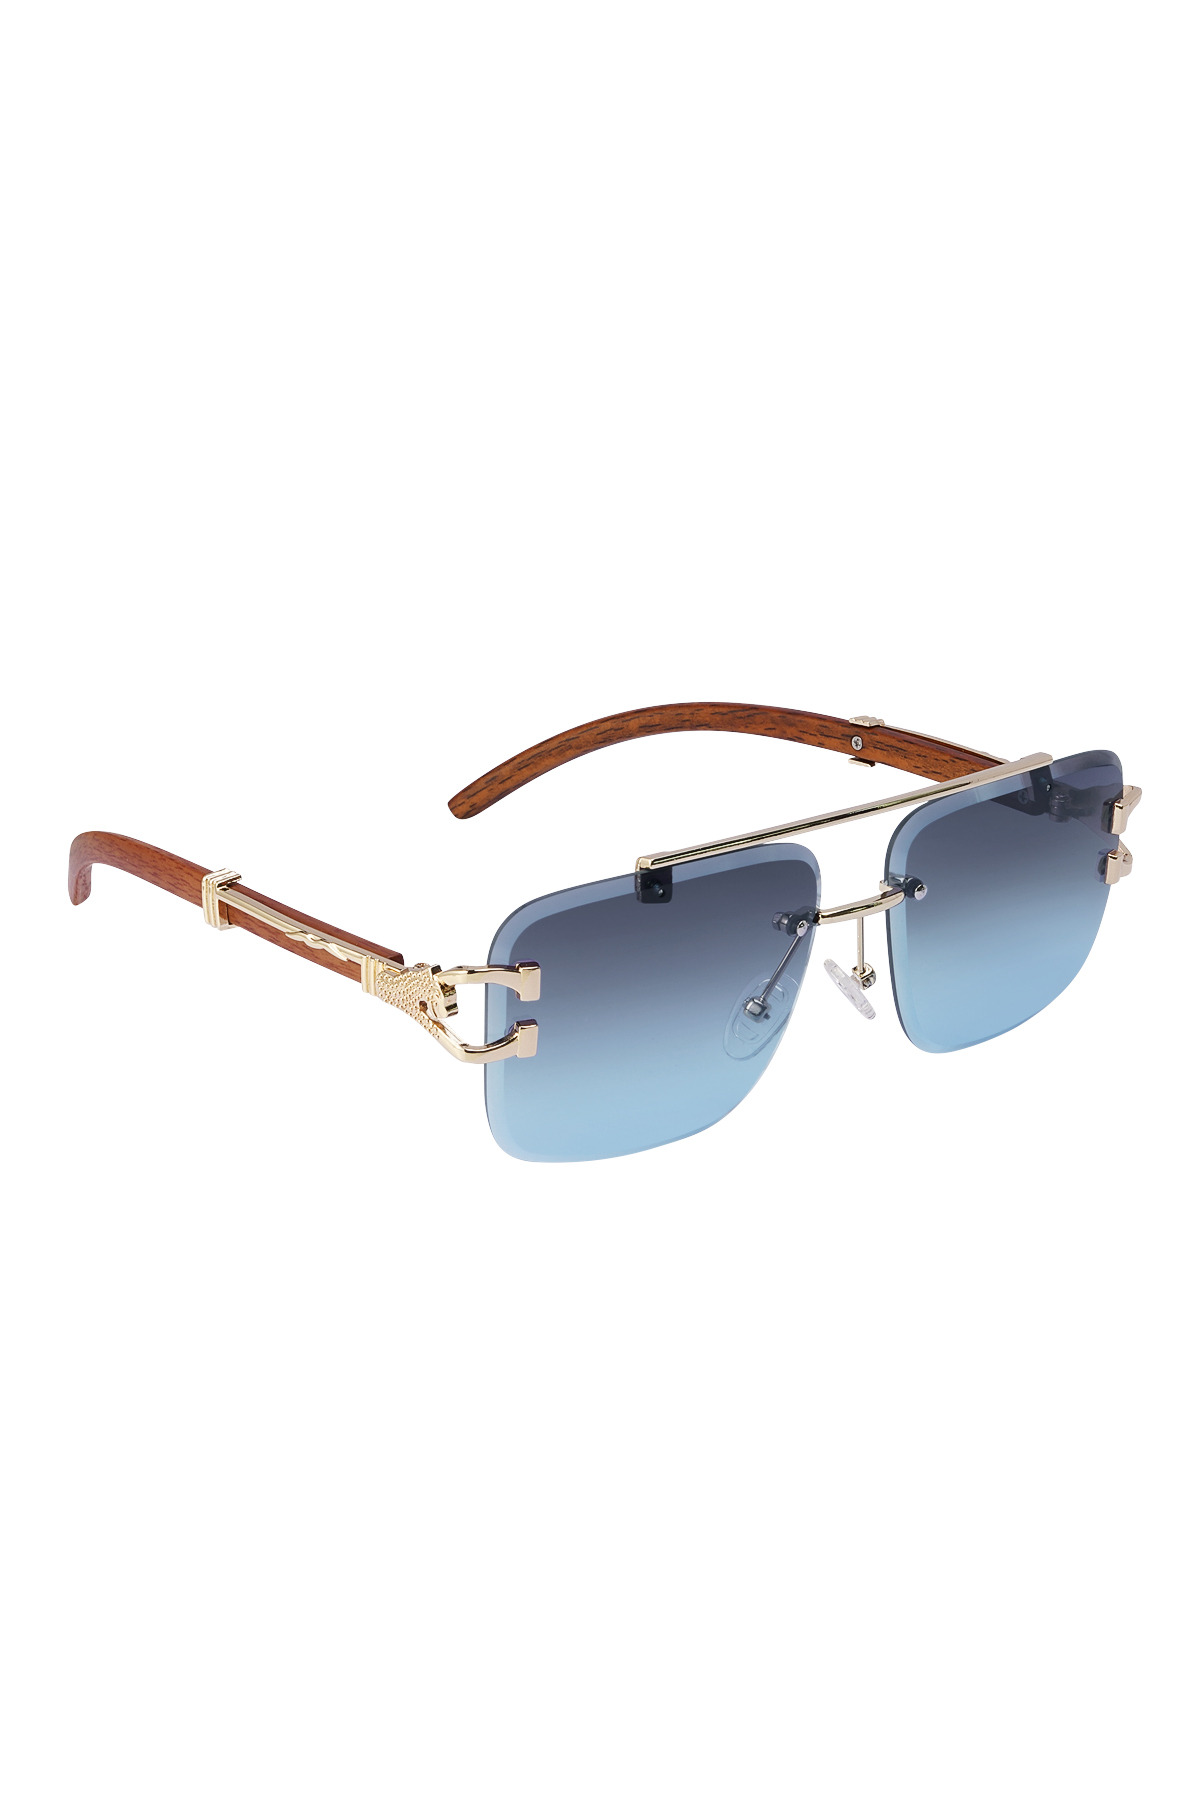 Sunglasses Wooden Details Leopard Blue